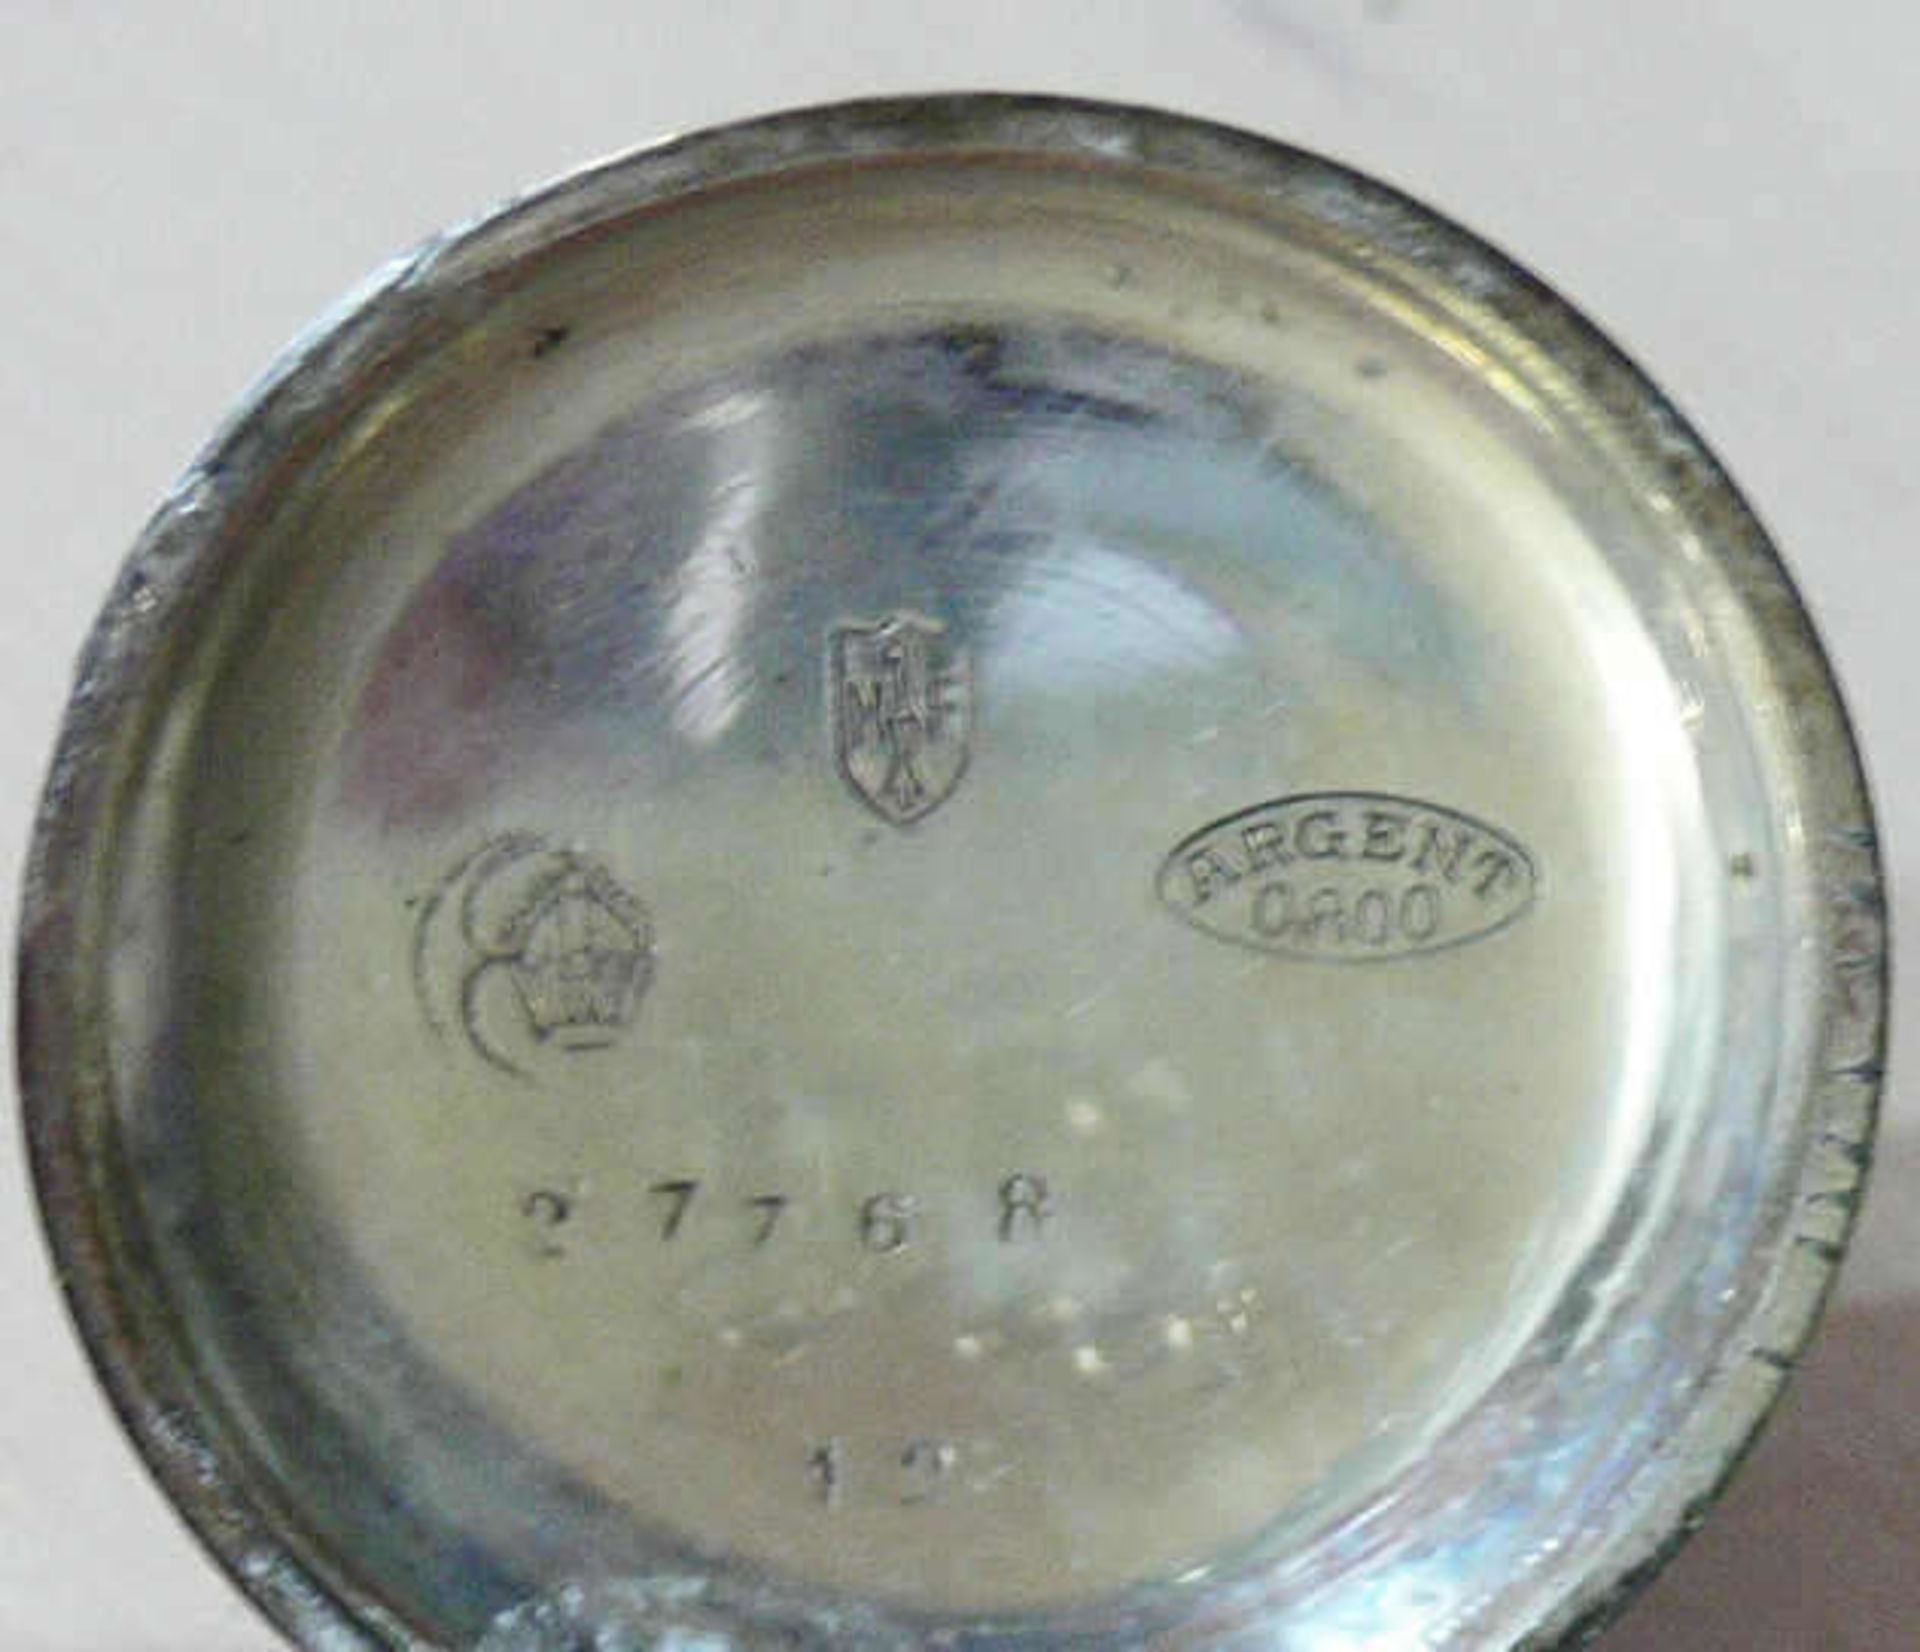 Kleine Taschenuhr, Gehäuse - Deckel 800er Silber gepunzt. Durchmesser: ca. 32 mm. Uhr läuft nicht - Bild 2 aus 3